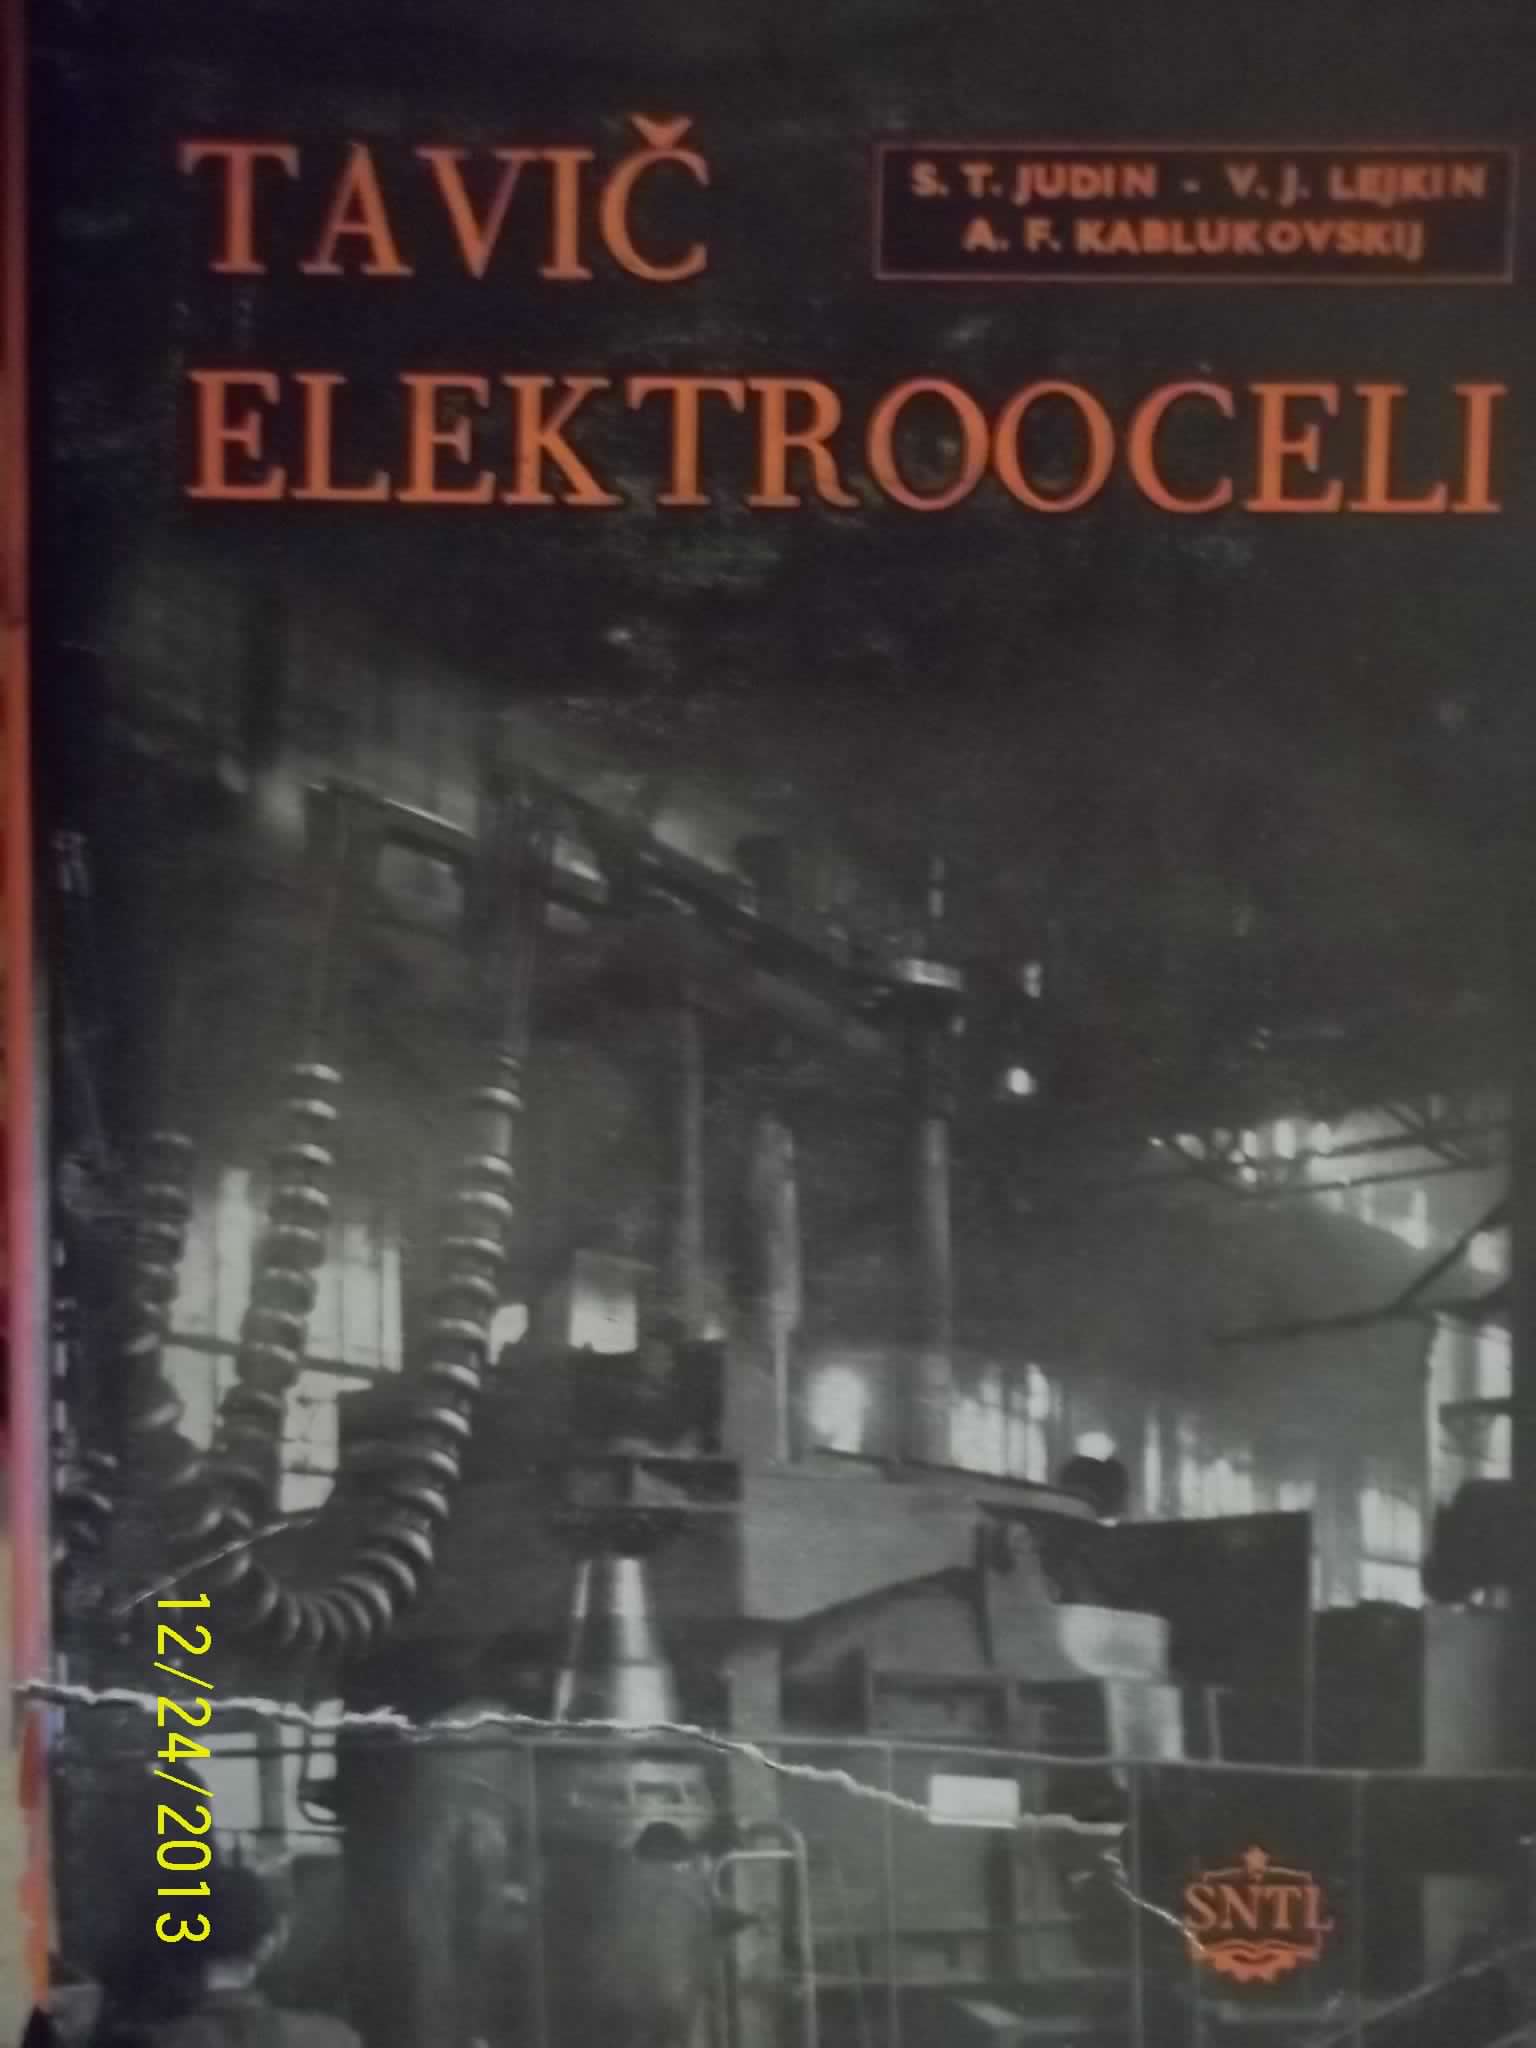 zobrazit detail knihy Judin, Sergej Timofejevič: Tavič elektrooceli